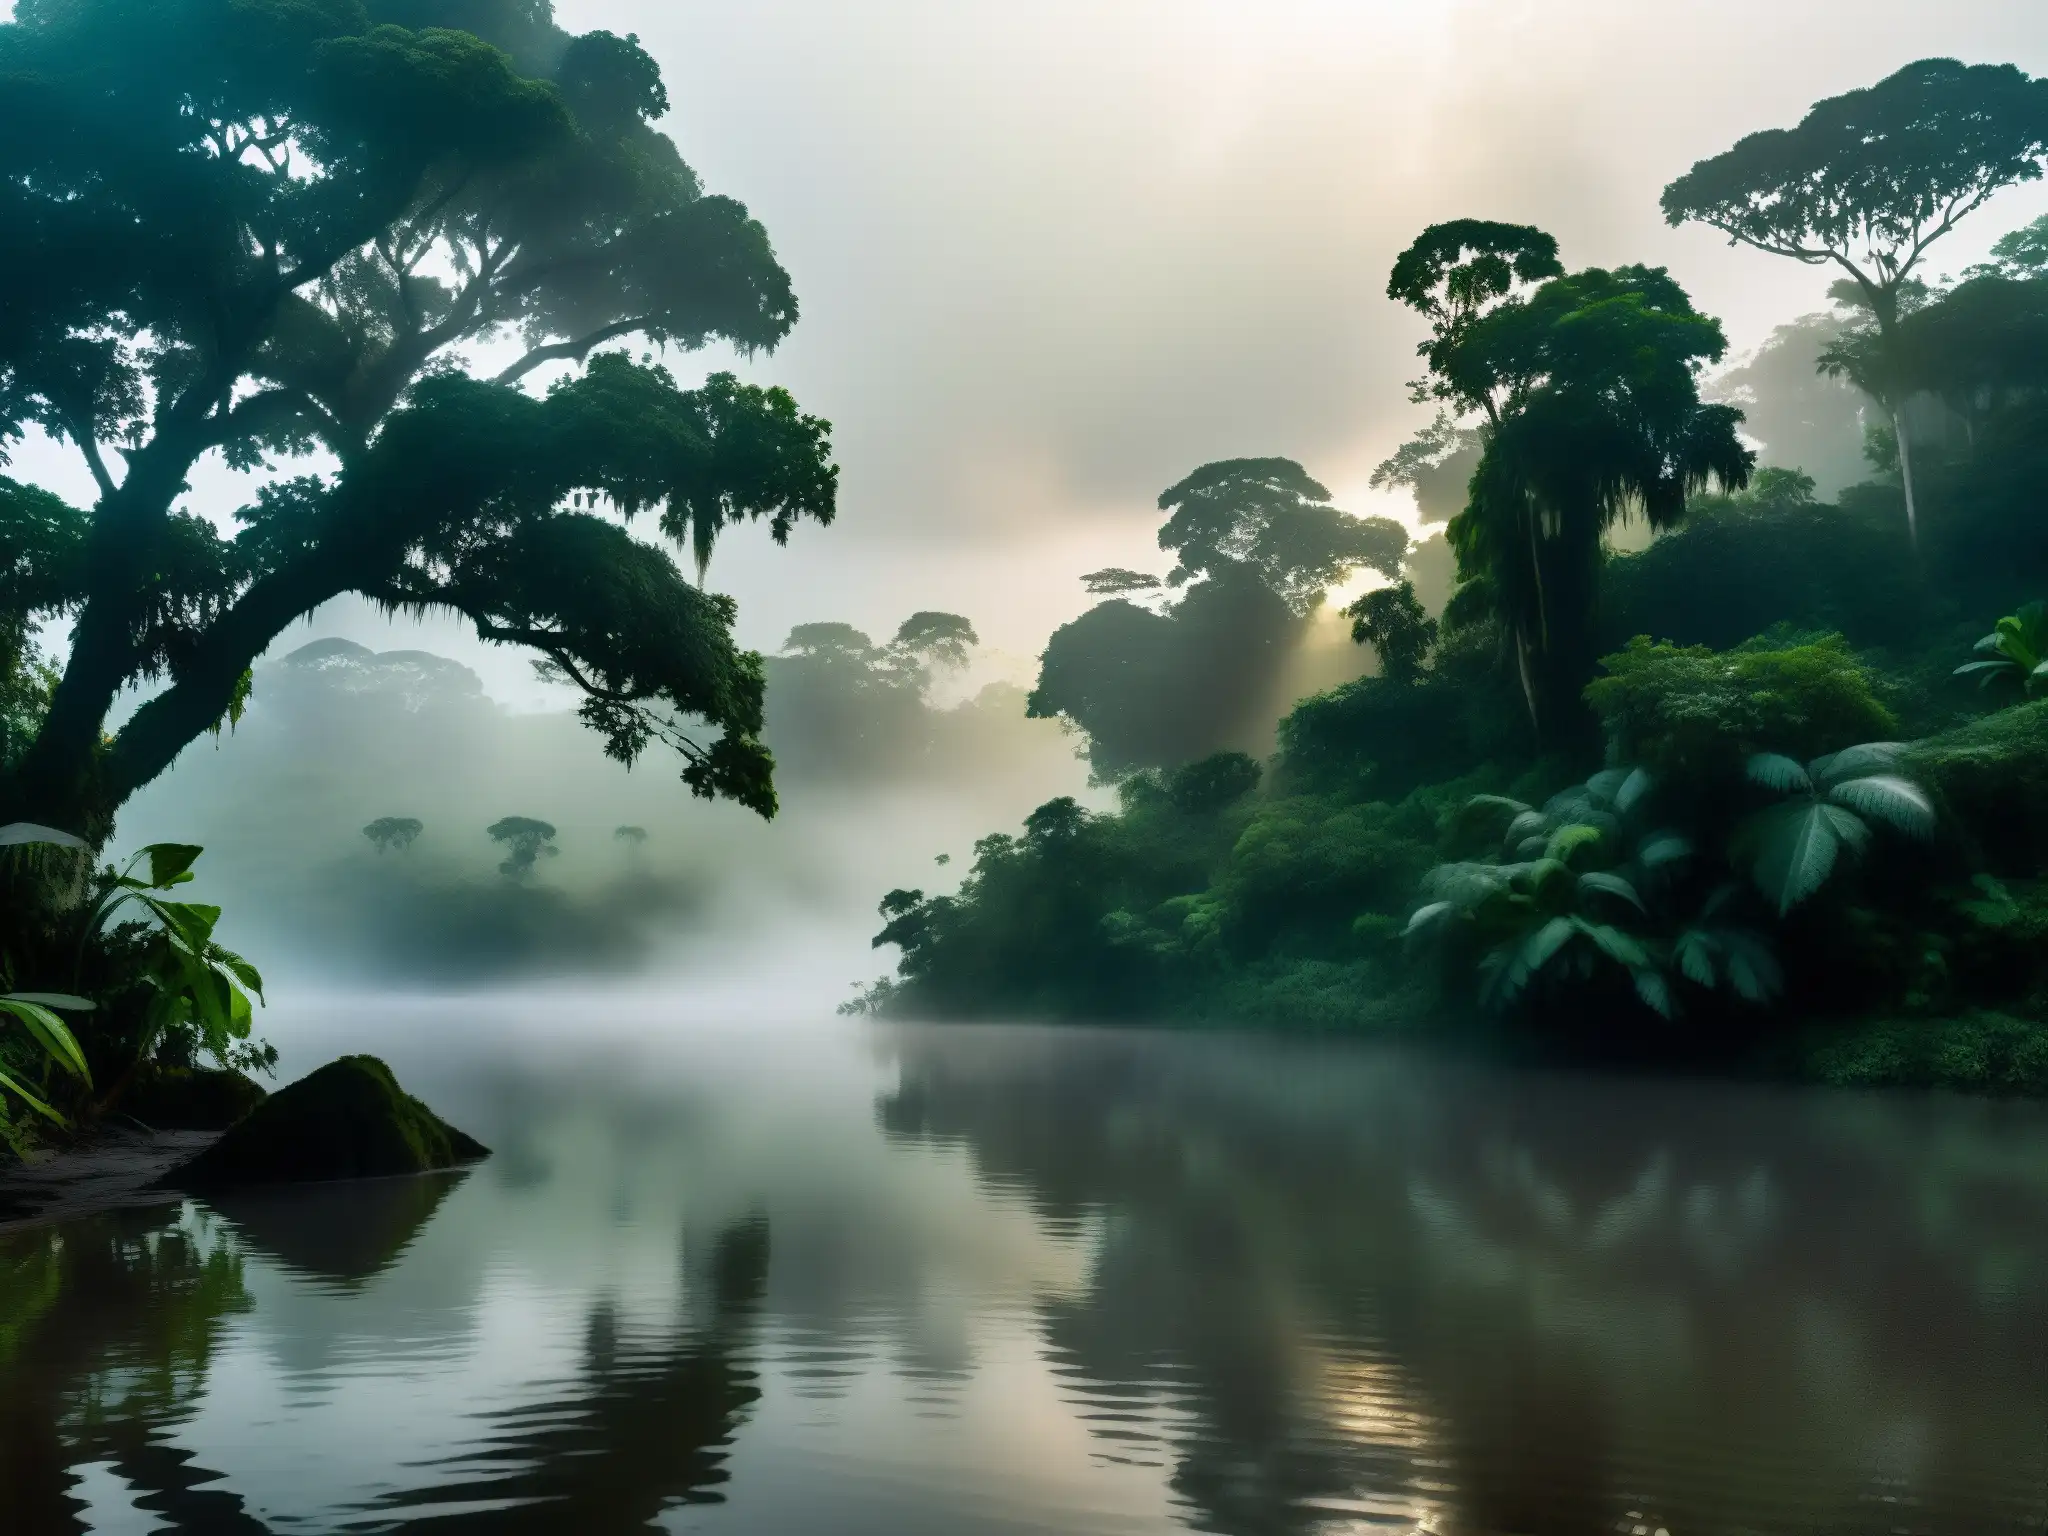 Misterioso río amazónico con niebla y silueta de figura, evocando el misterio del mito de la Encantada en el Amazonas